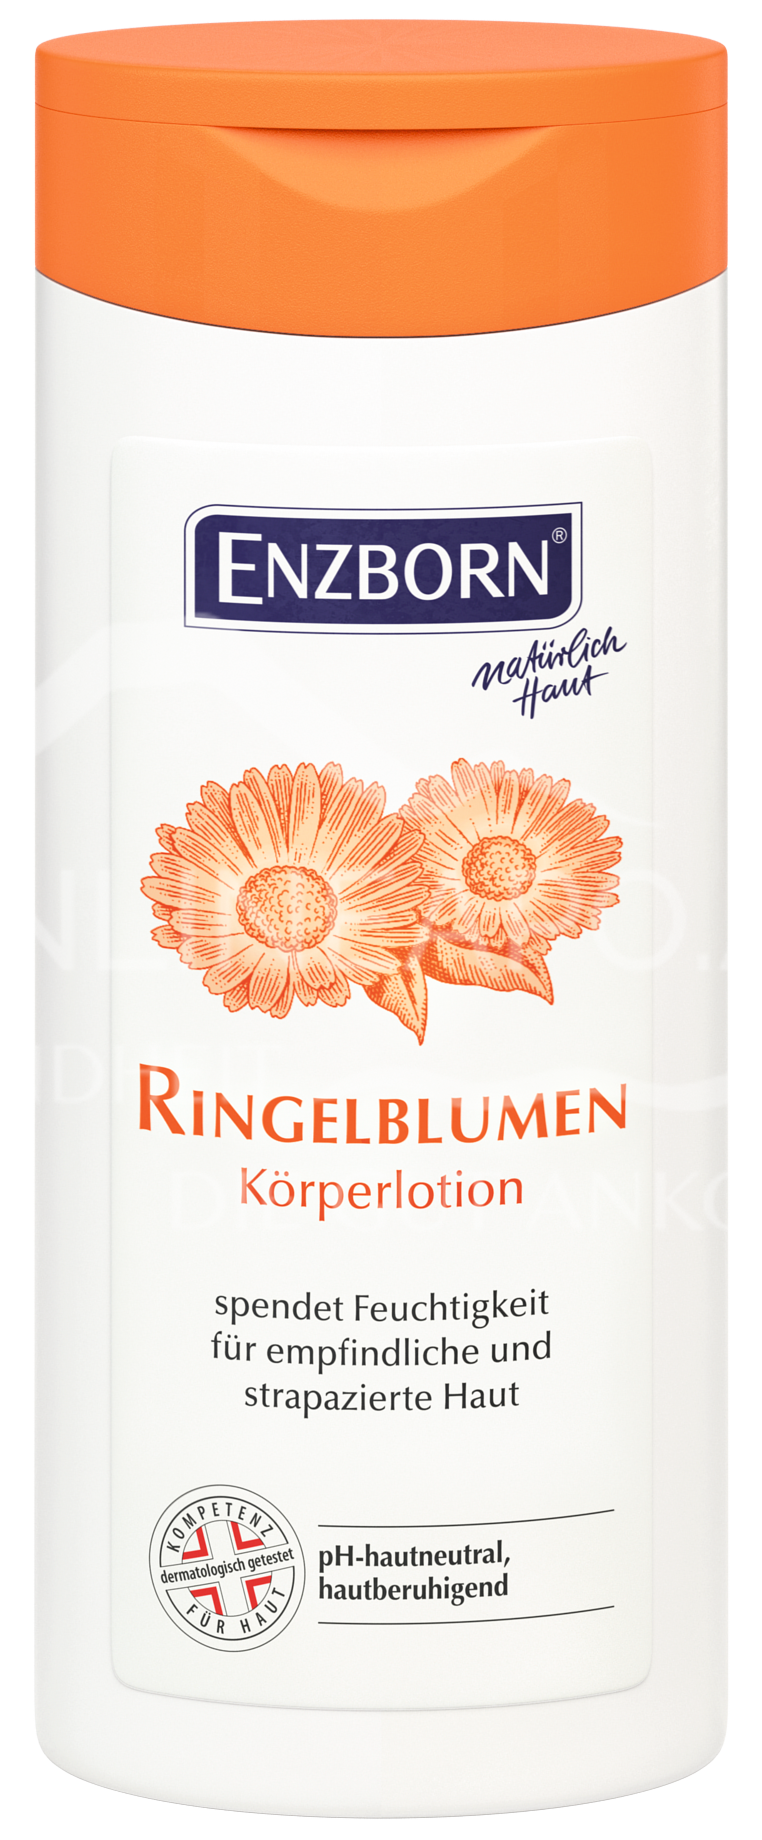 Enzborn Ringelblumen Körperlotion